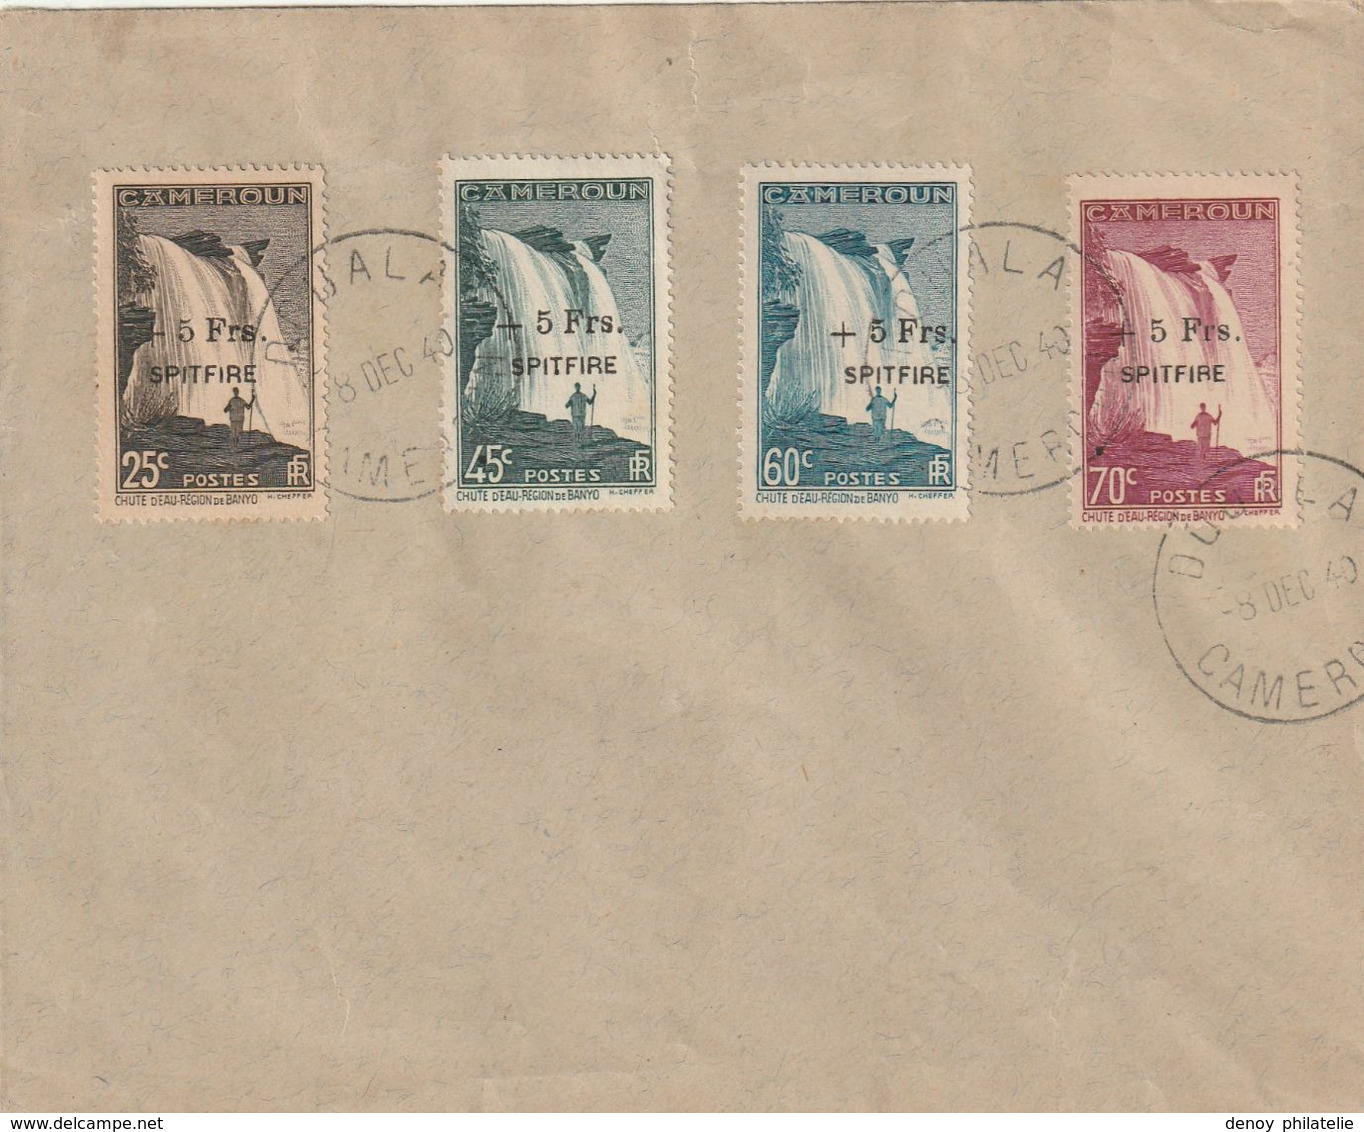 Cameroun Série Spitfire Sur Lettre Douala 1940 N° 236 A 239 Oblitéré Du 8 Décembre 1940 - Used Stamps